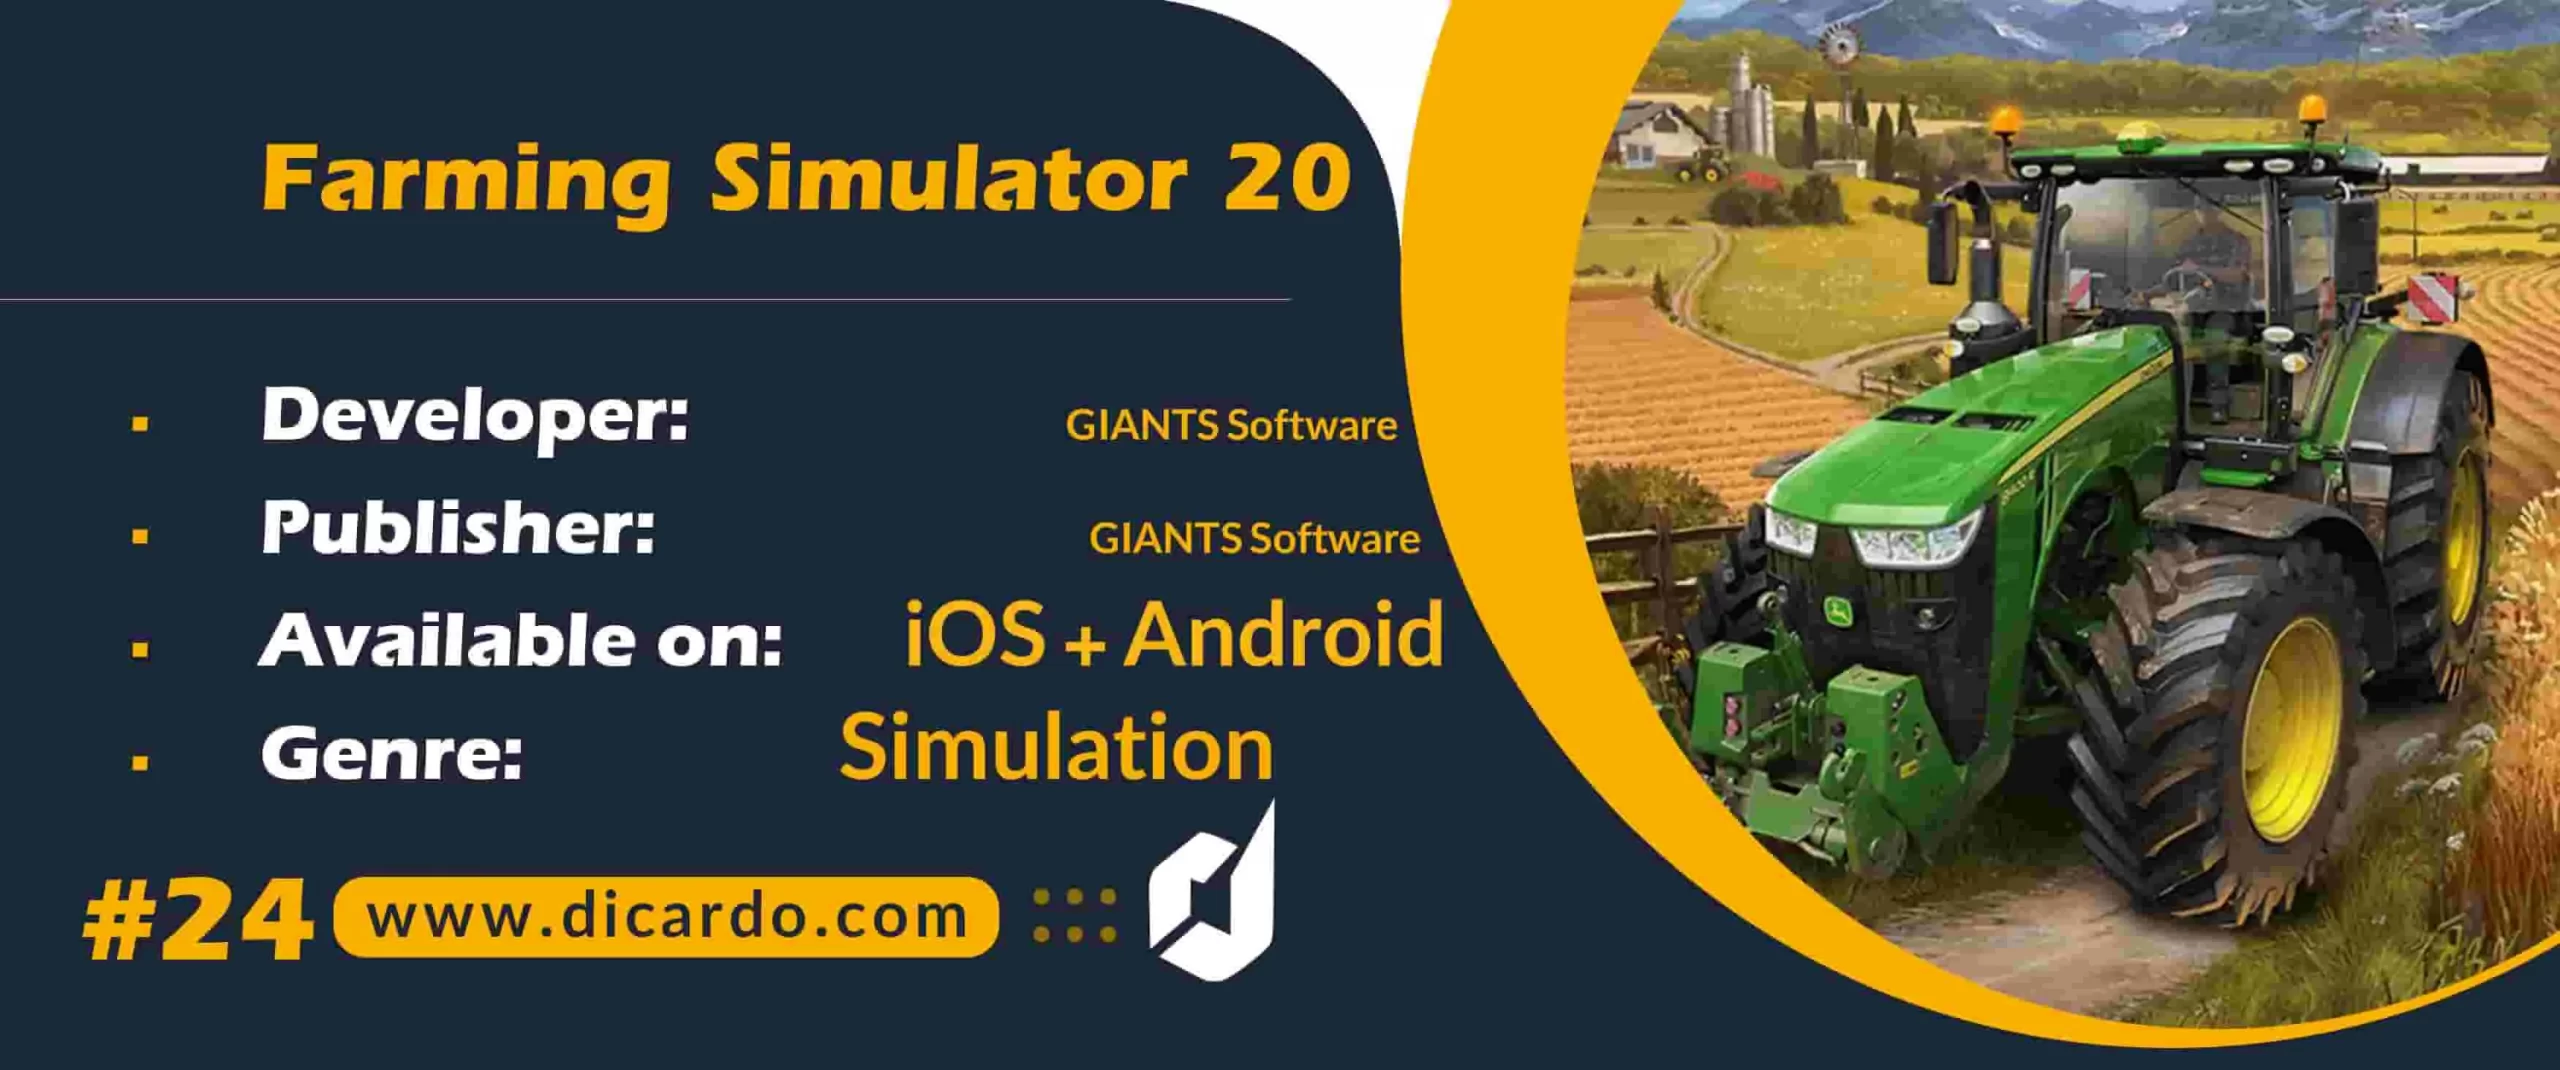 #24 فارمینگ سیمولیشر توانی Farming Simulator 20